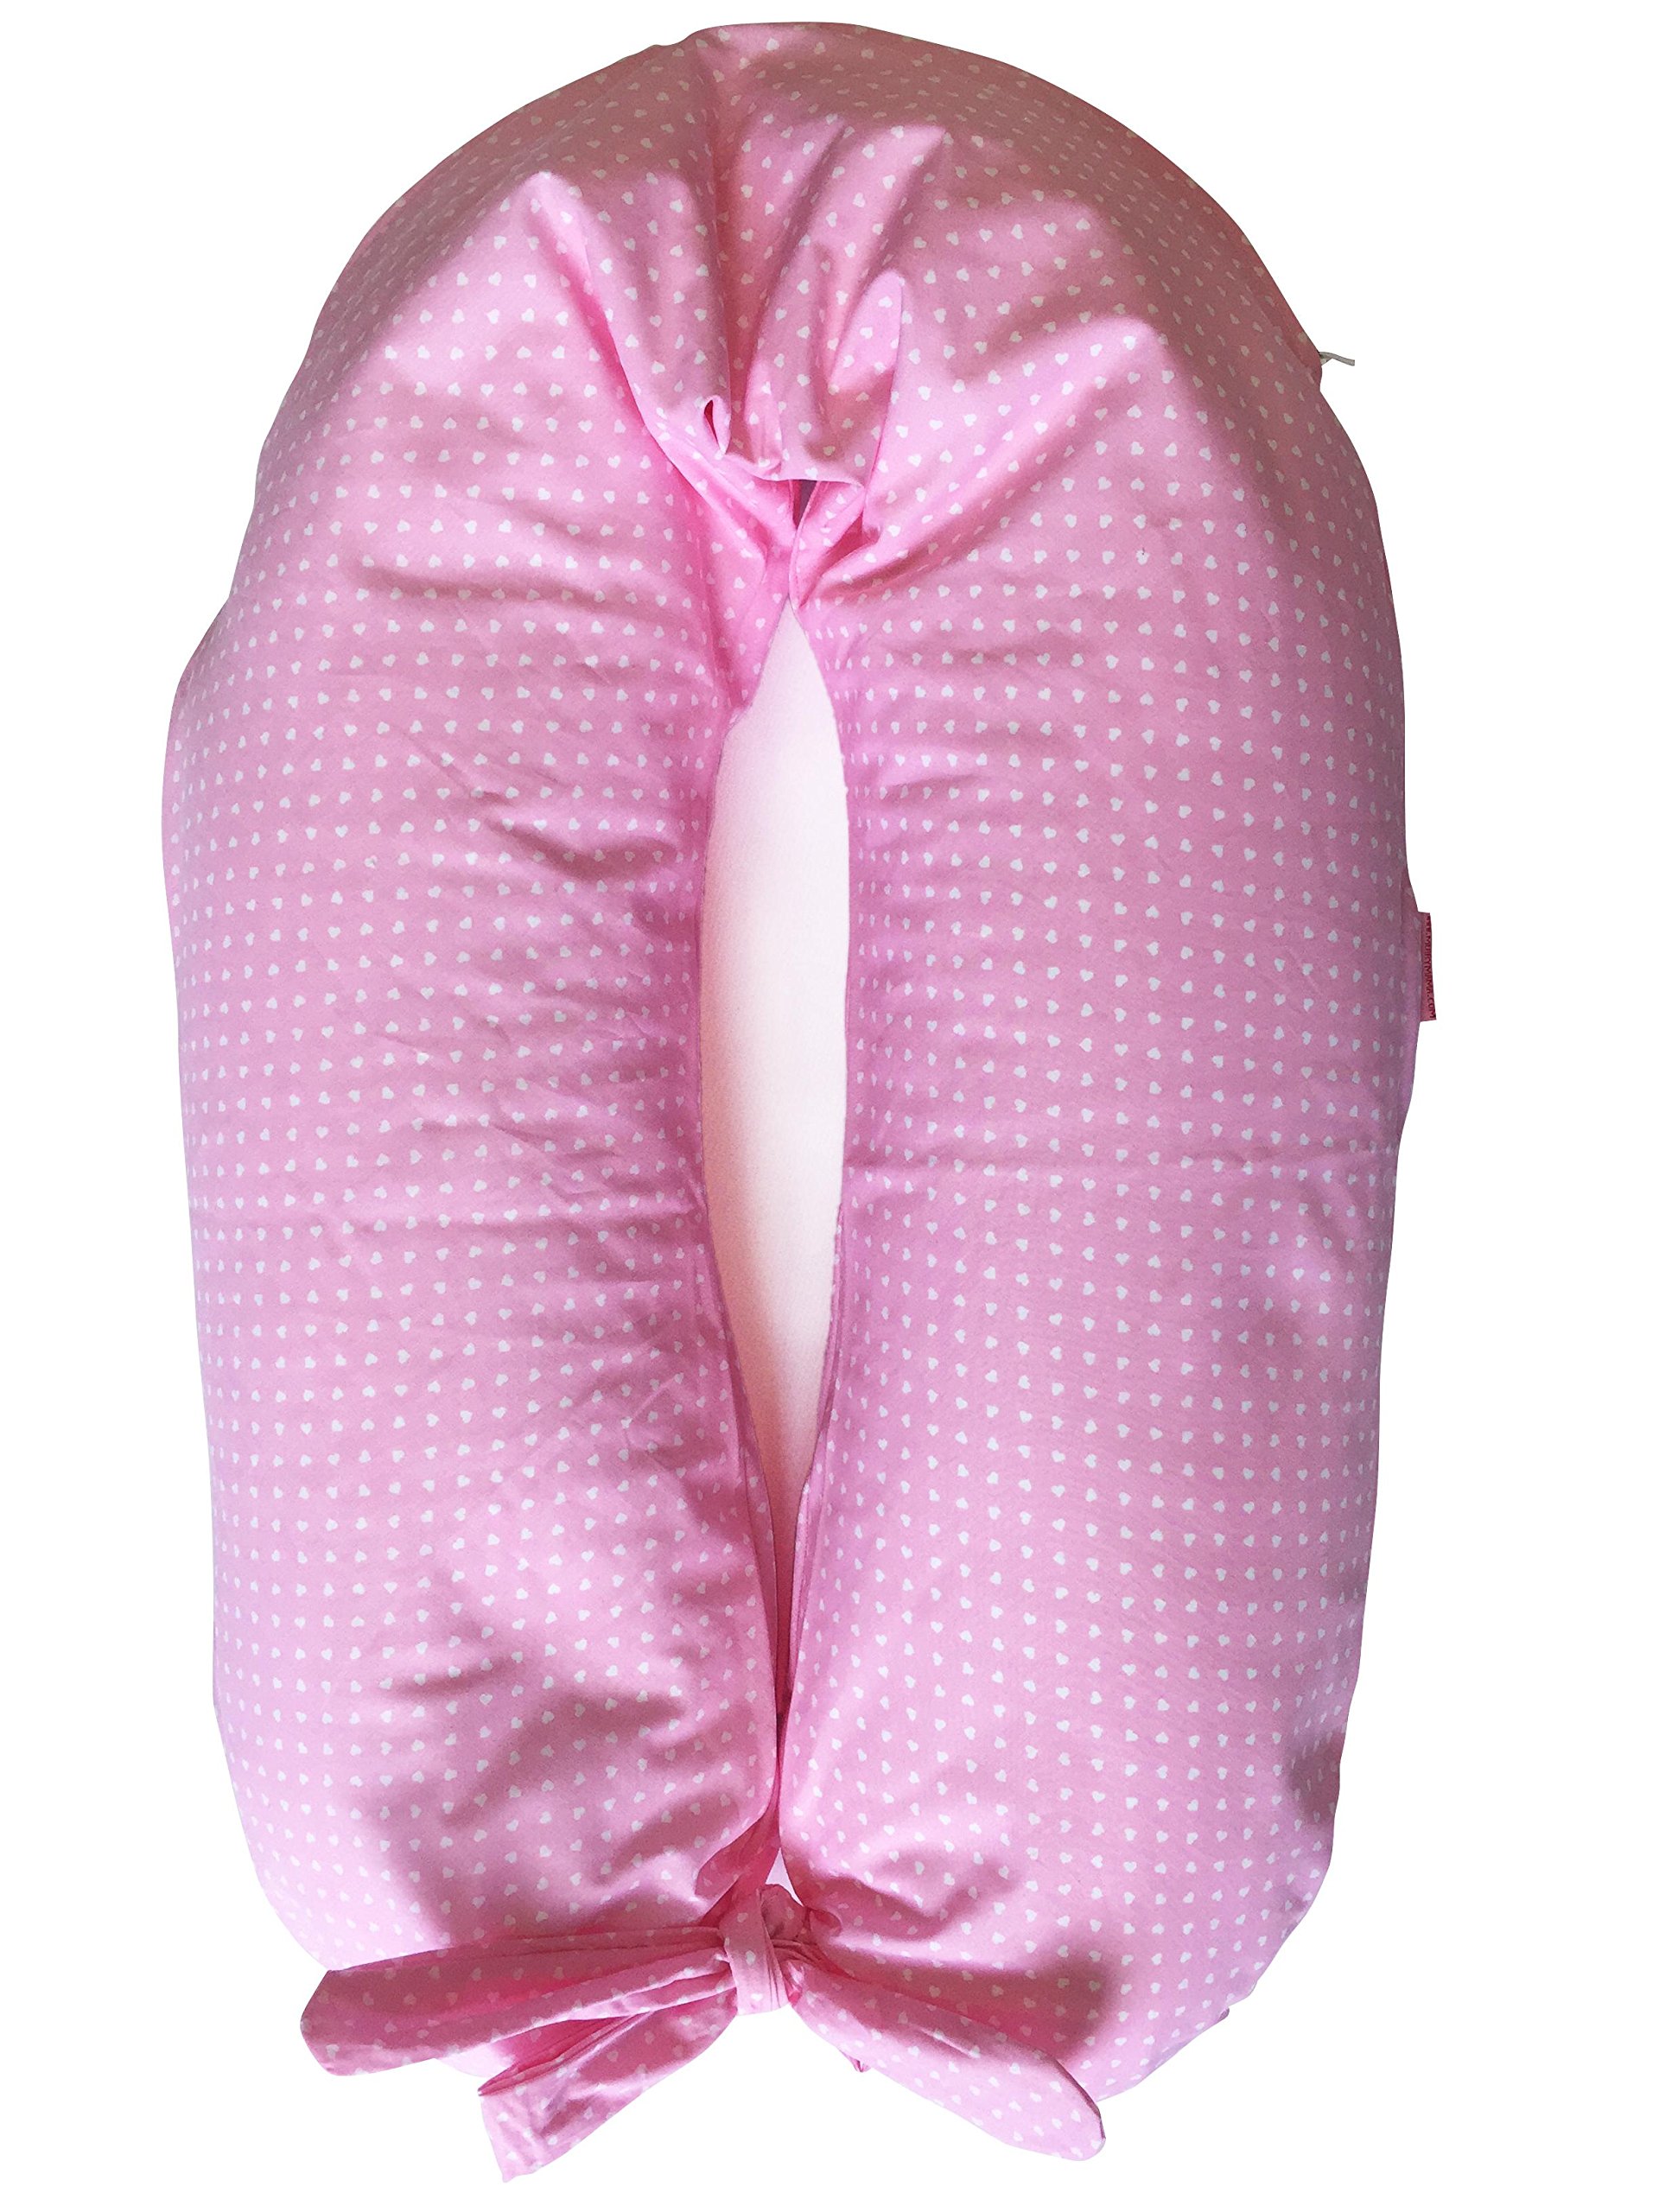 merrymama – Stillkissen und Schwangerschaft + Futter mit Schnürung/cm 190 (gefüllt mit Polystyrolkugeln Polystyrol feuerfest) Rosa